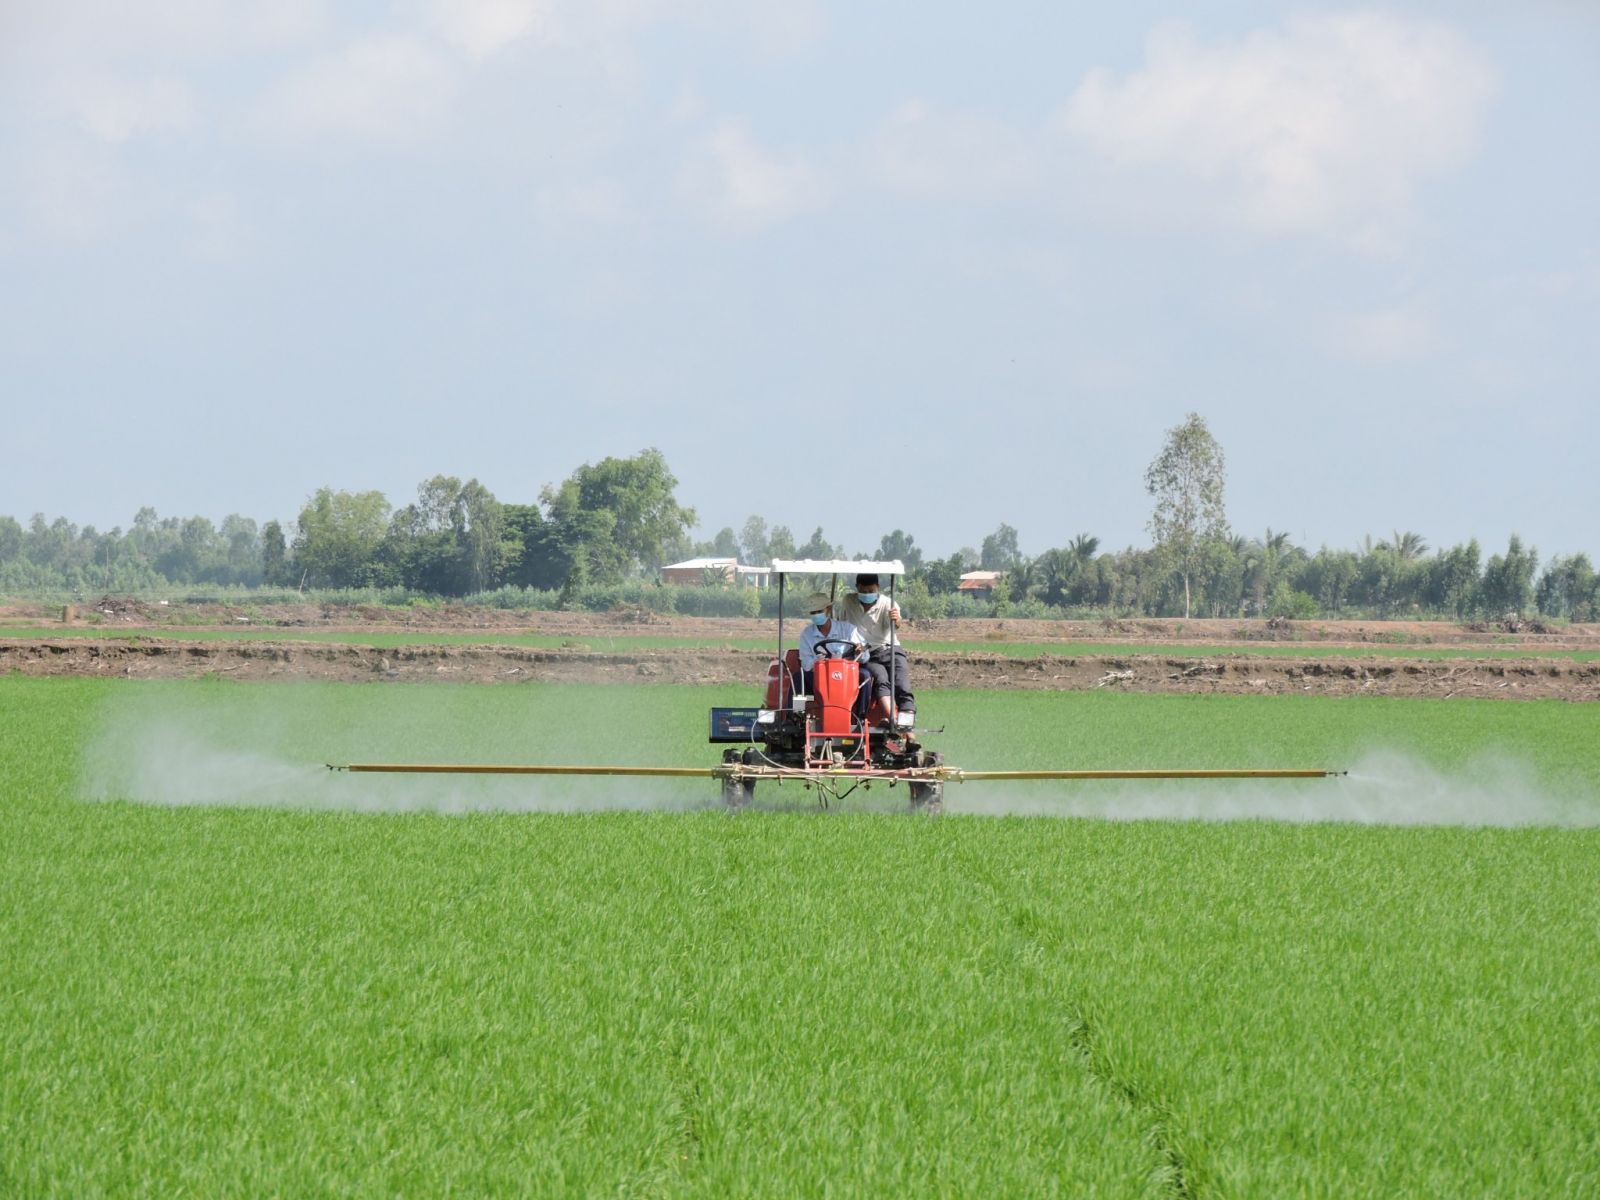 Tổng kết mô hình liên kết sản xuất lúa chất lượng theo hướng hữu cơ gắn với  tiêu thụ sản phẩm vụ xuân tại xã Yên Phong  Cổng thông tin điện